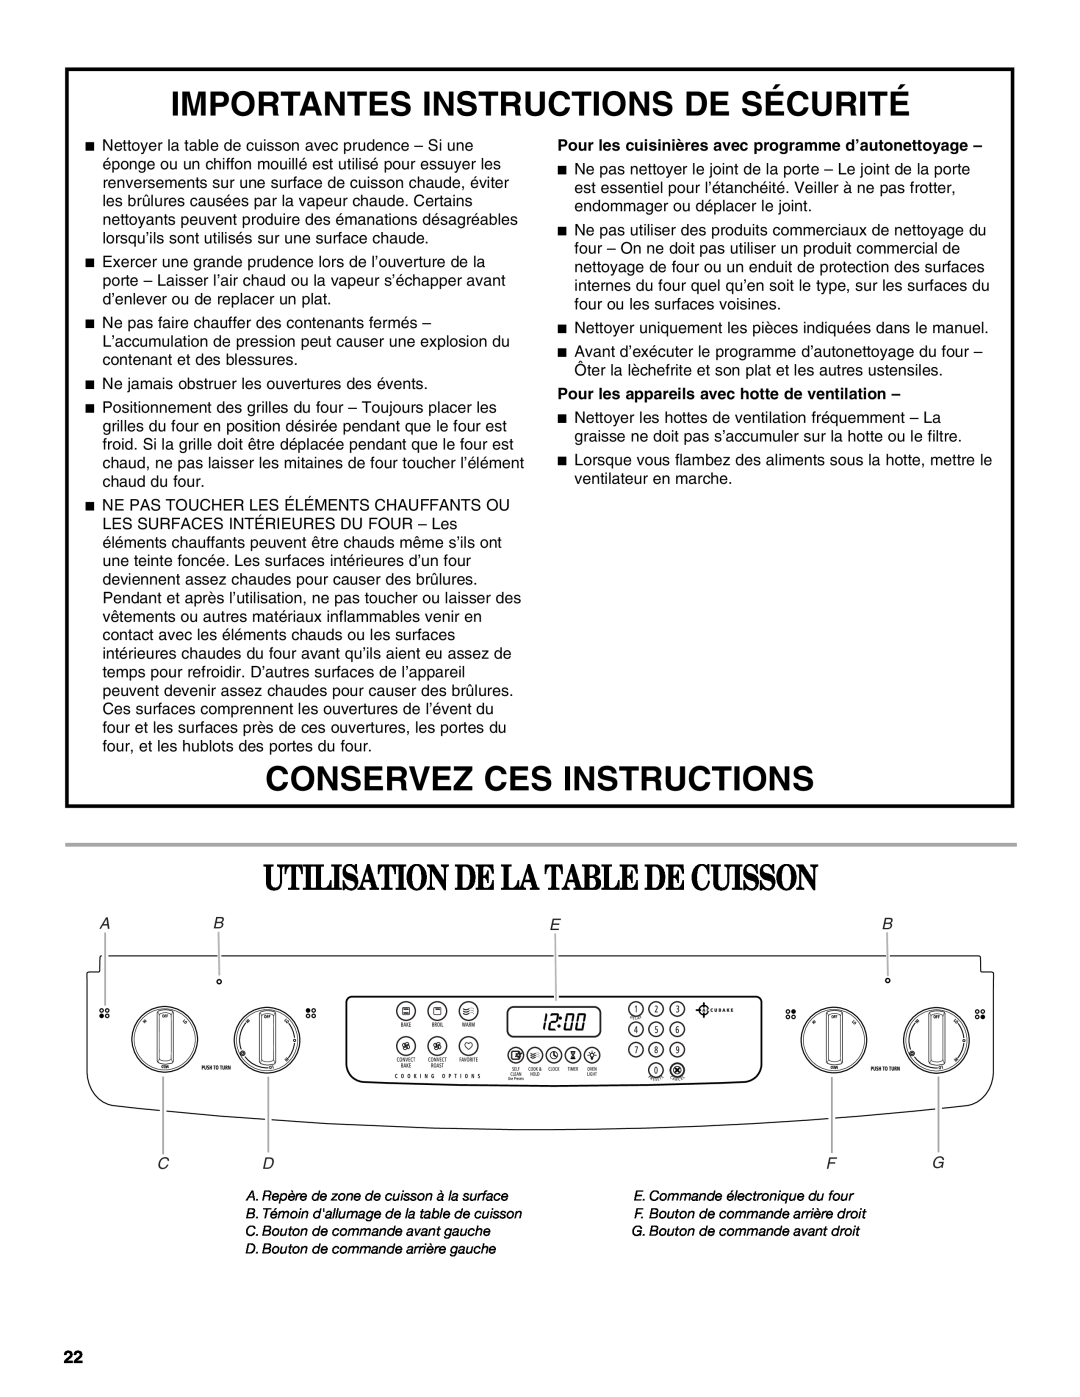 Whirlpool GY397LXUS Utilisation De La Table De Cuisson, Importantes Instructions De Sécurité, Conservez Ces Instructions 